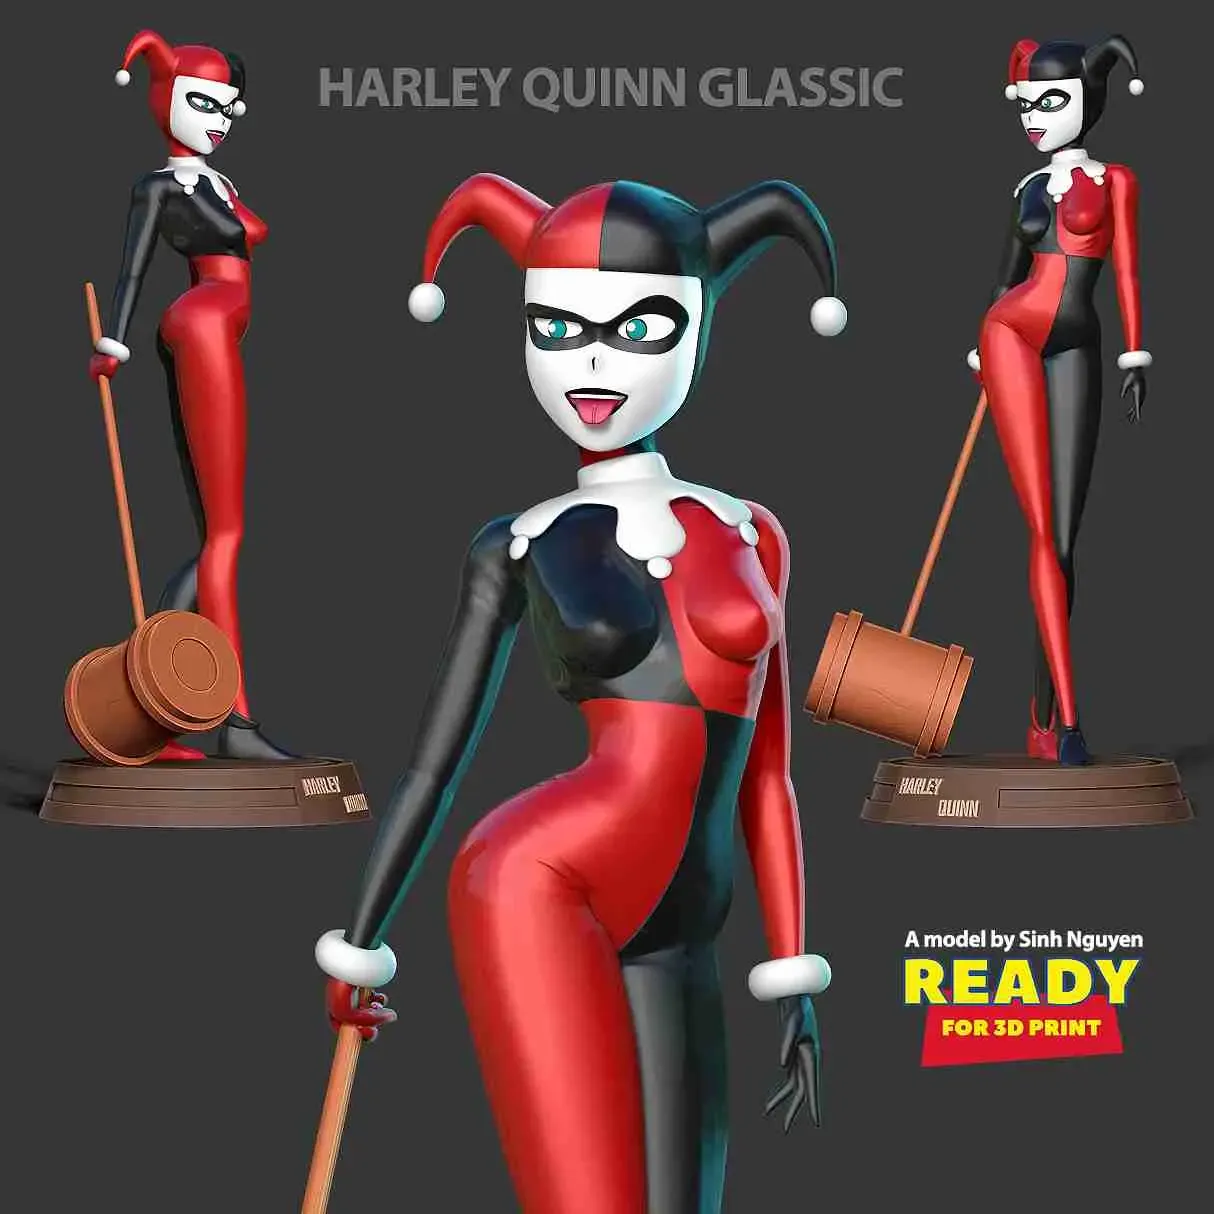 Classic Harley Quinn